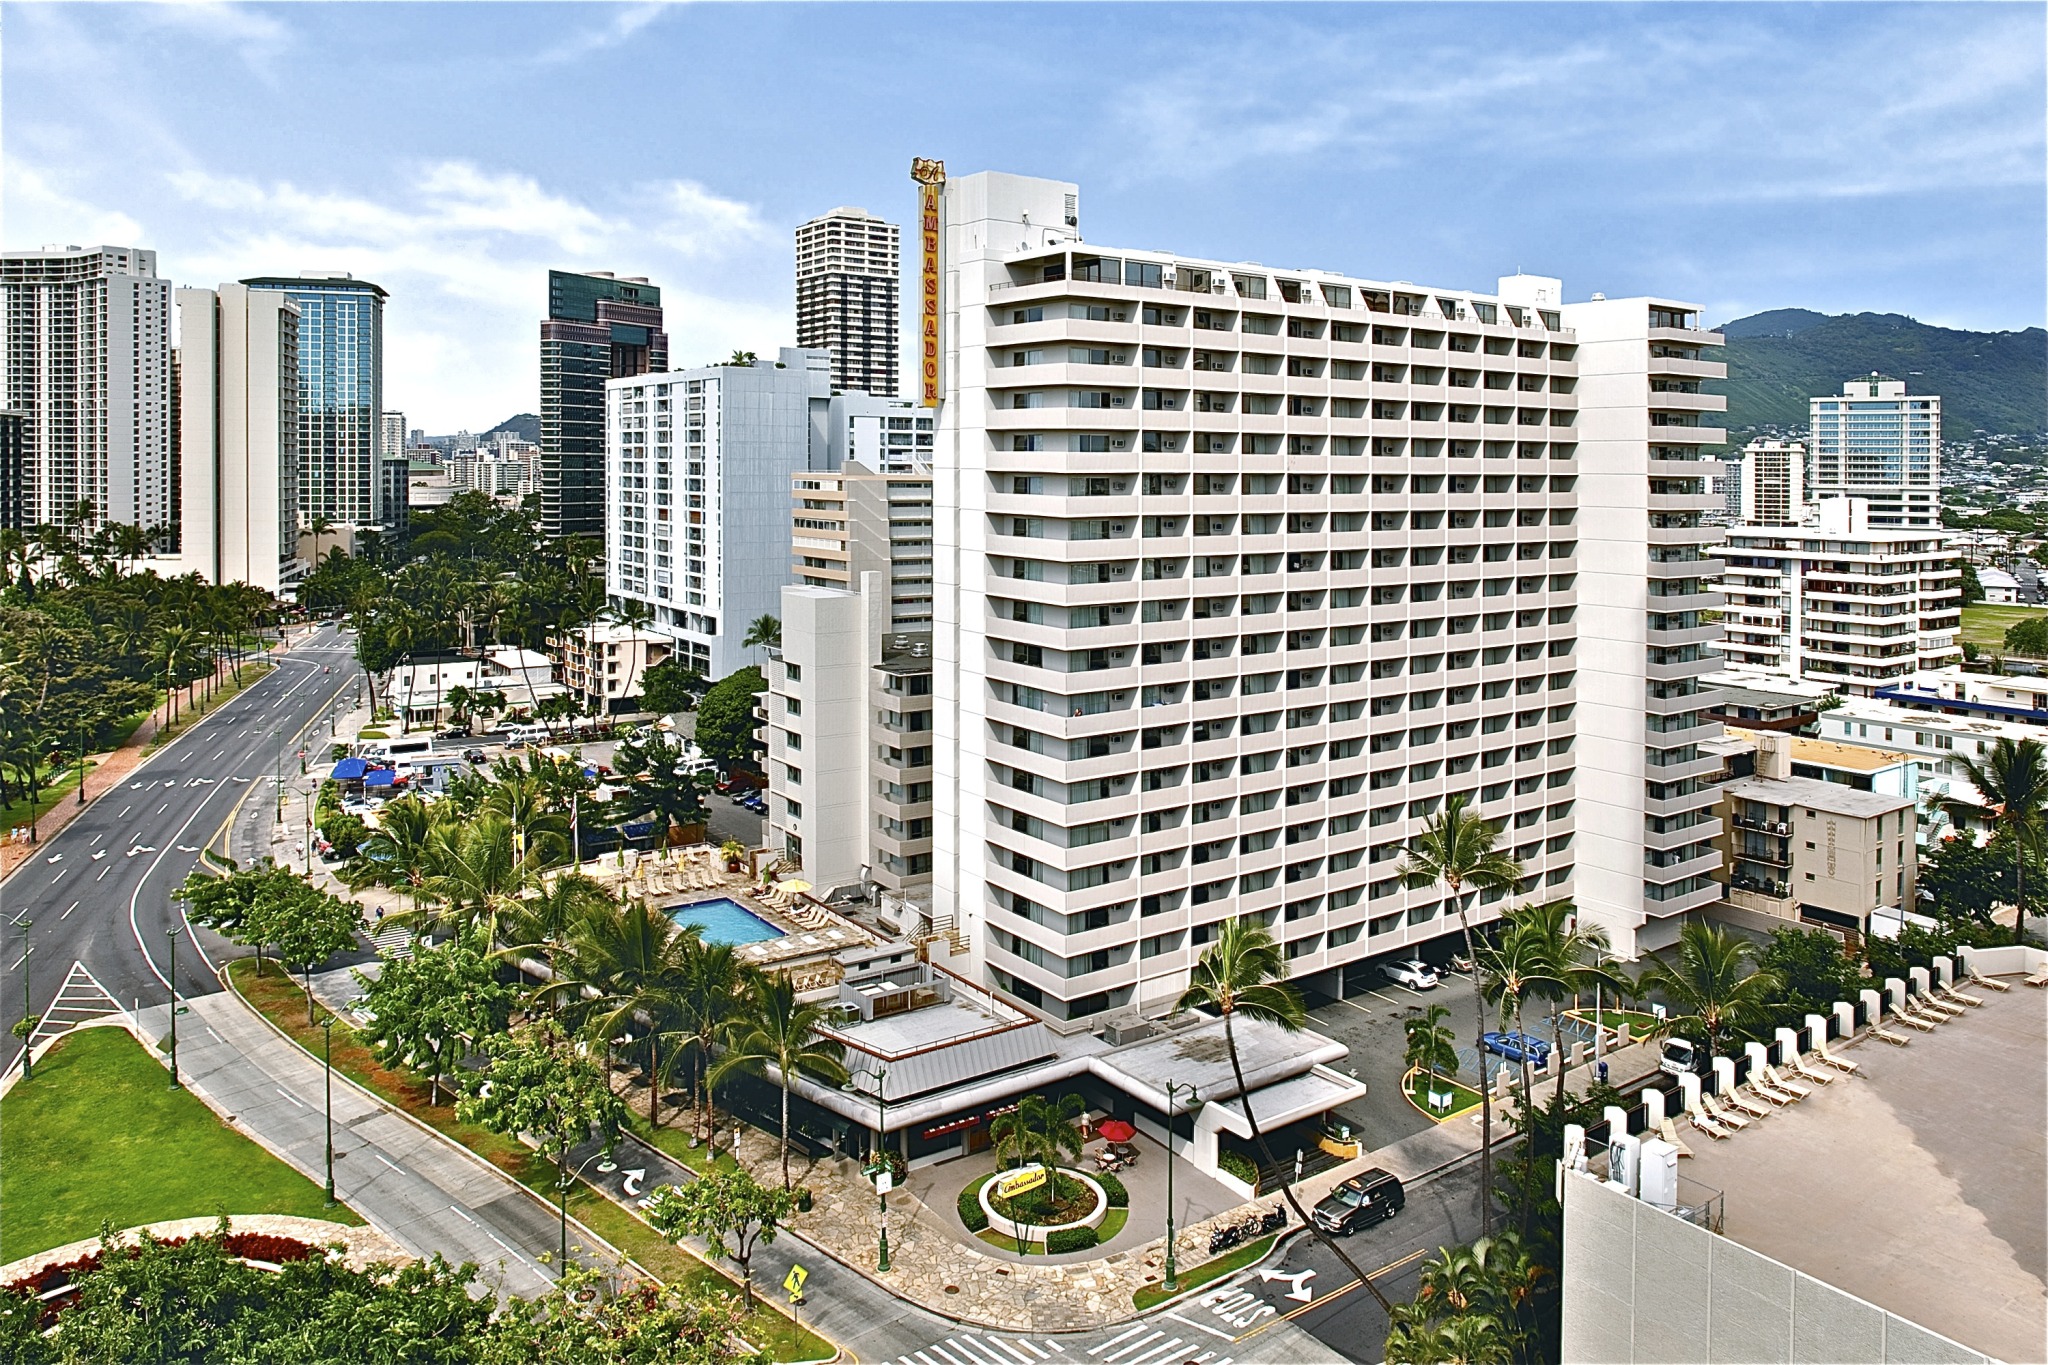 Ambassador Hotel Waikiki Beach is an ideally located Waikiki Hotel.